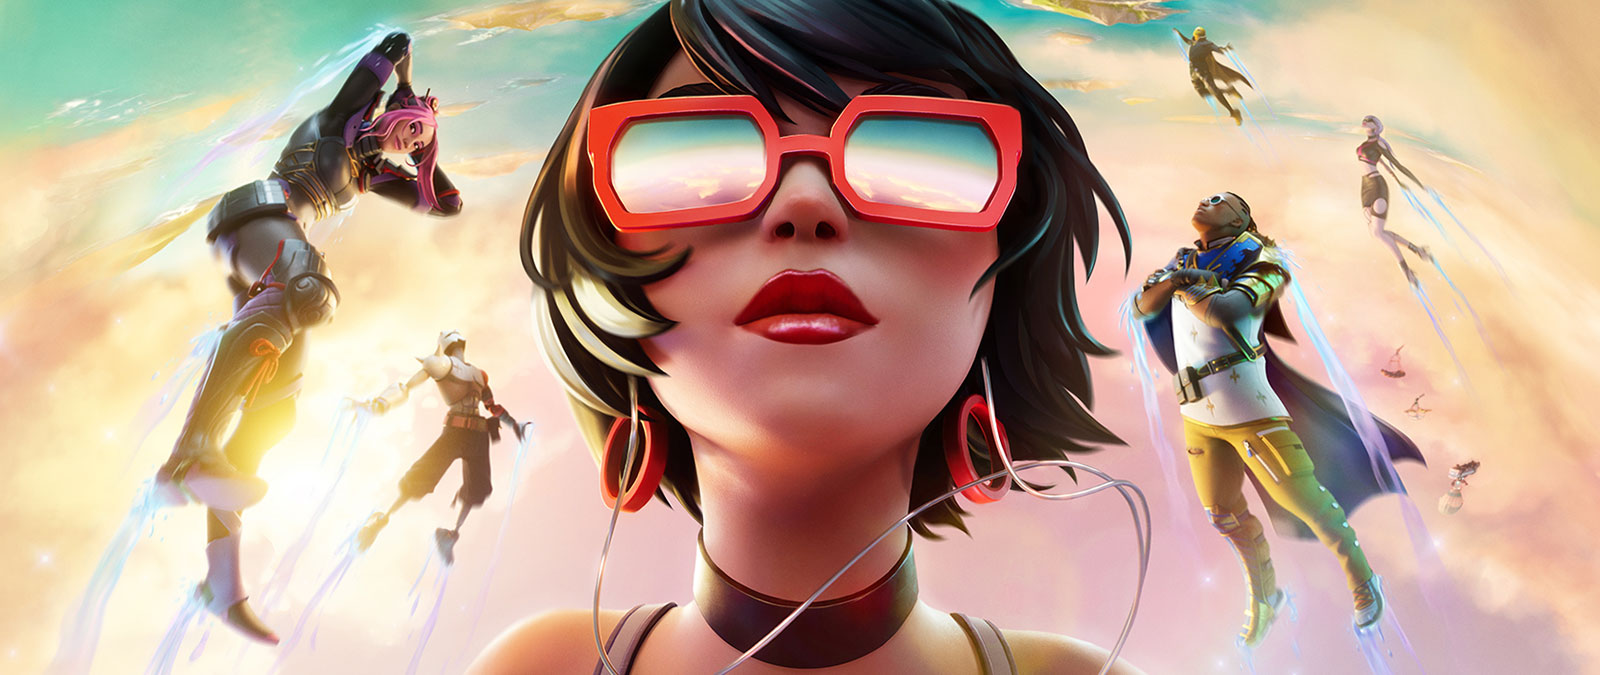 Uma garota de óculos de sol vermelhos flutua nas nuvens com outros personagens contra um céu de cor pastel.